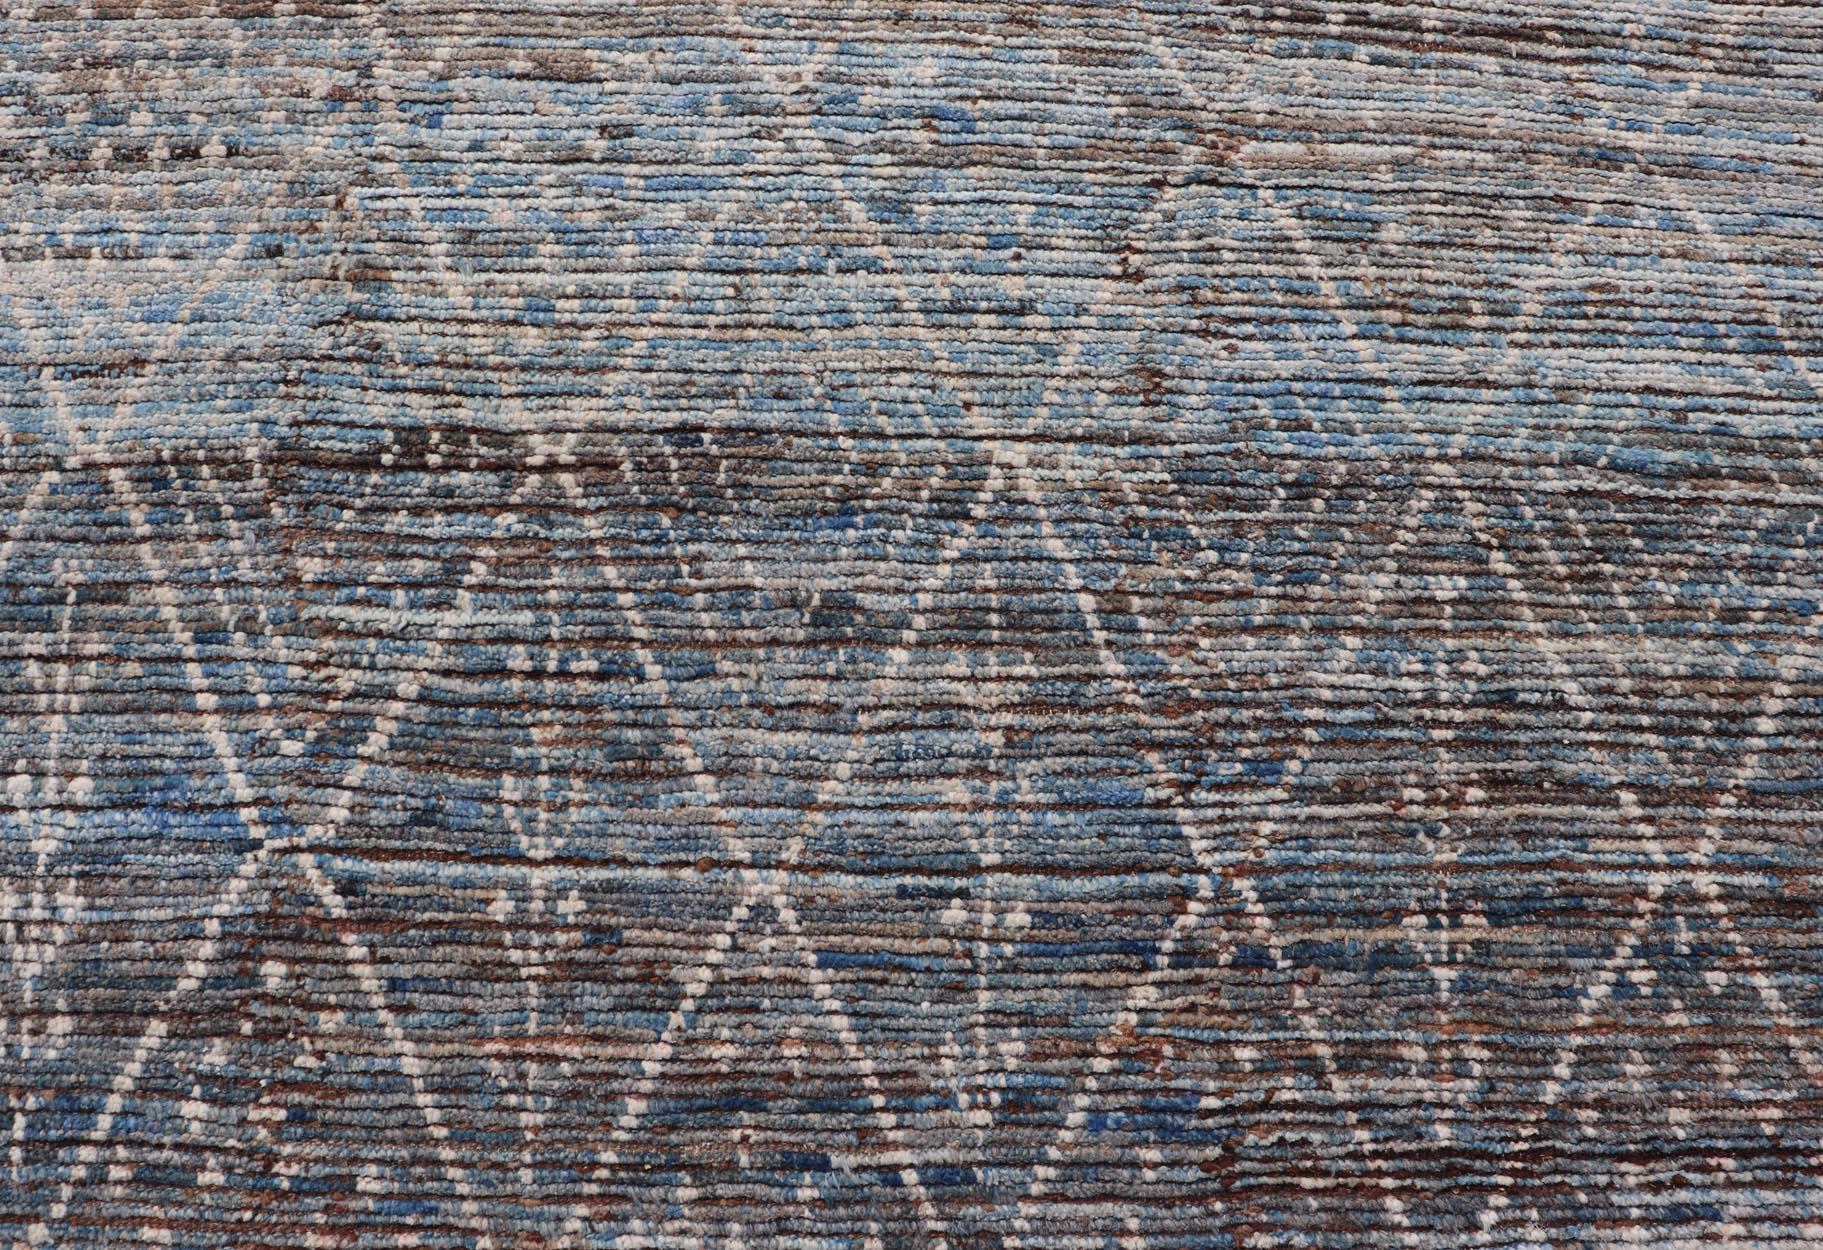 Moderner Tribal-Teppich aus Wolle mit subgeometrischem Design in Dunkelblau, Tan und Elfenbein. Keivan Woven Arts / Teppich SNK-1907, Herkunftsland / Art: Afghanistan / Modern Casual, etwa Anfang des 21. Jahrhunderts.
Maße: 6'10 x 9'2 
Dieser